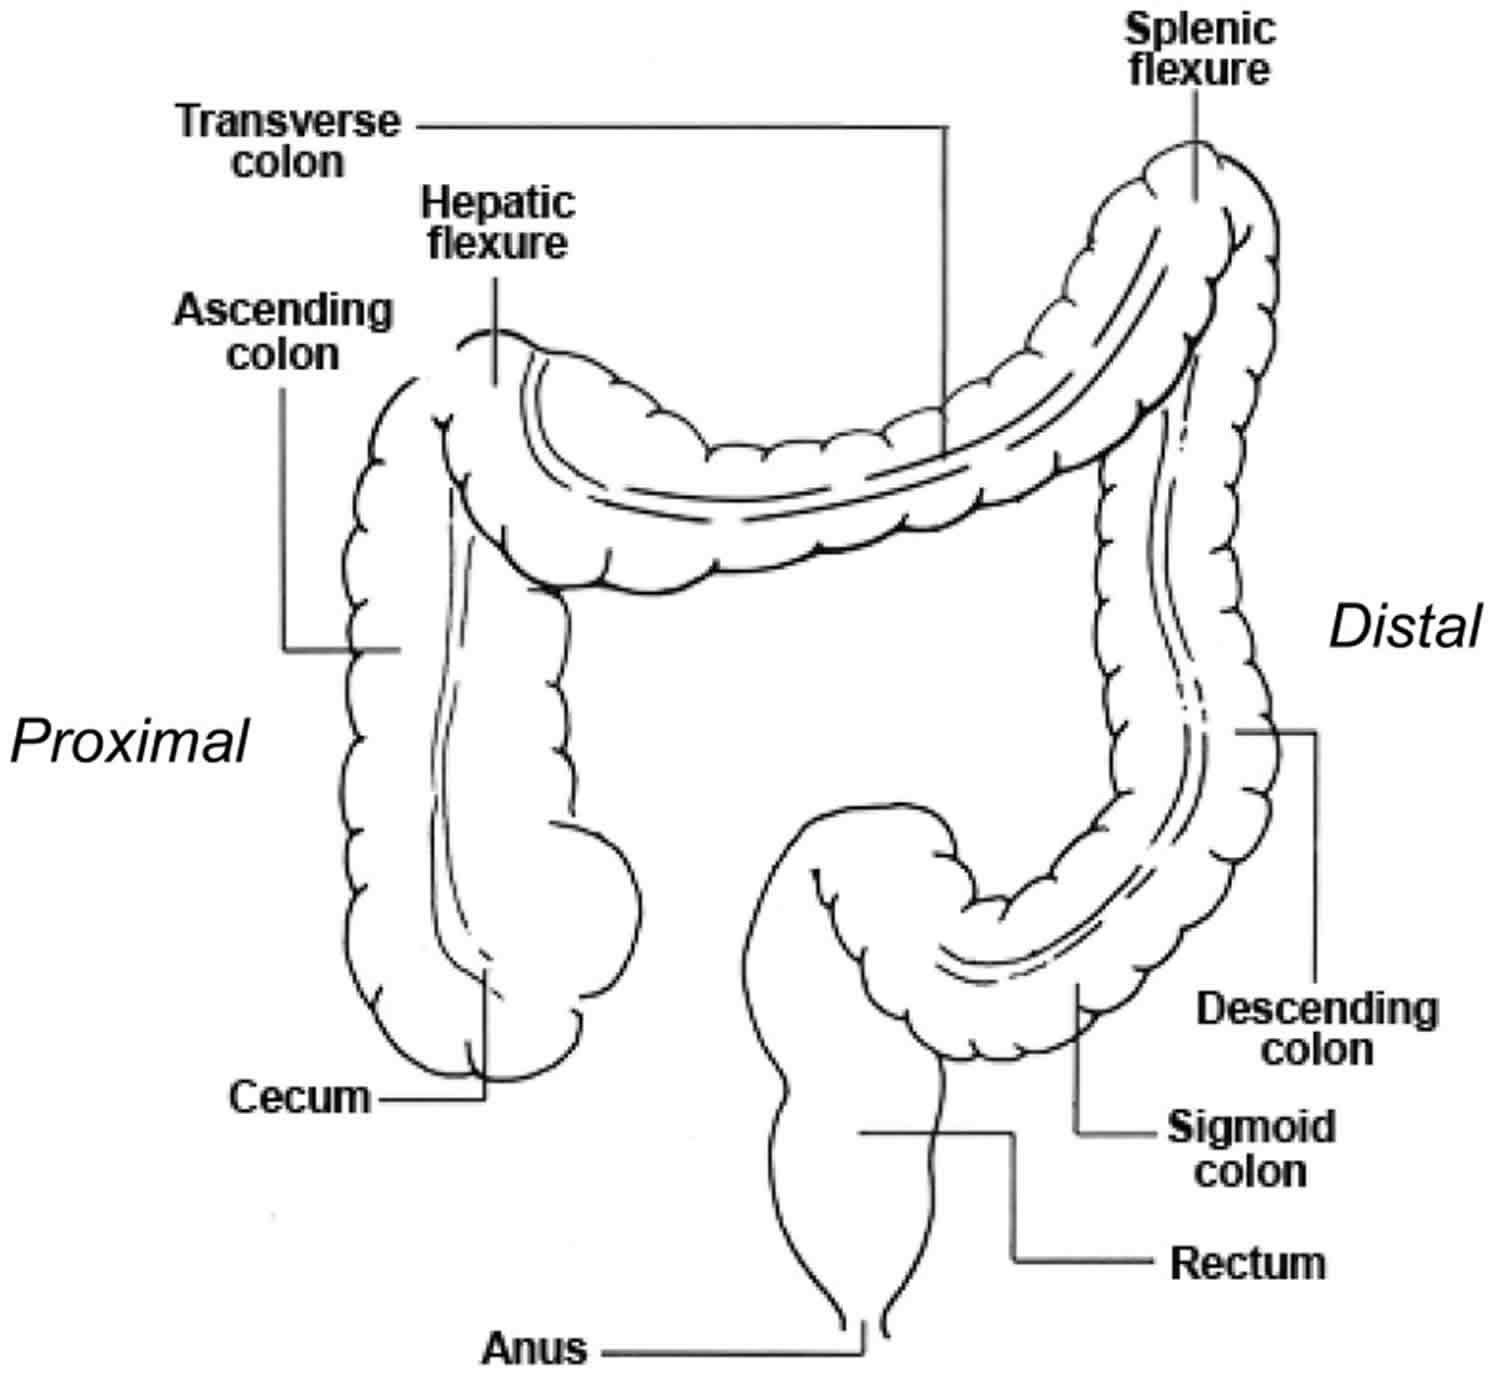 Colon bas

rectum

anus